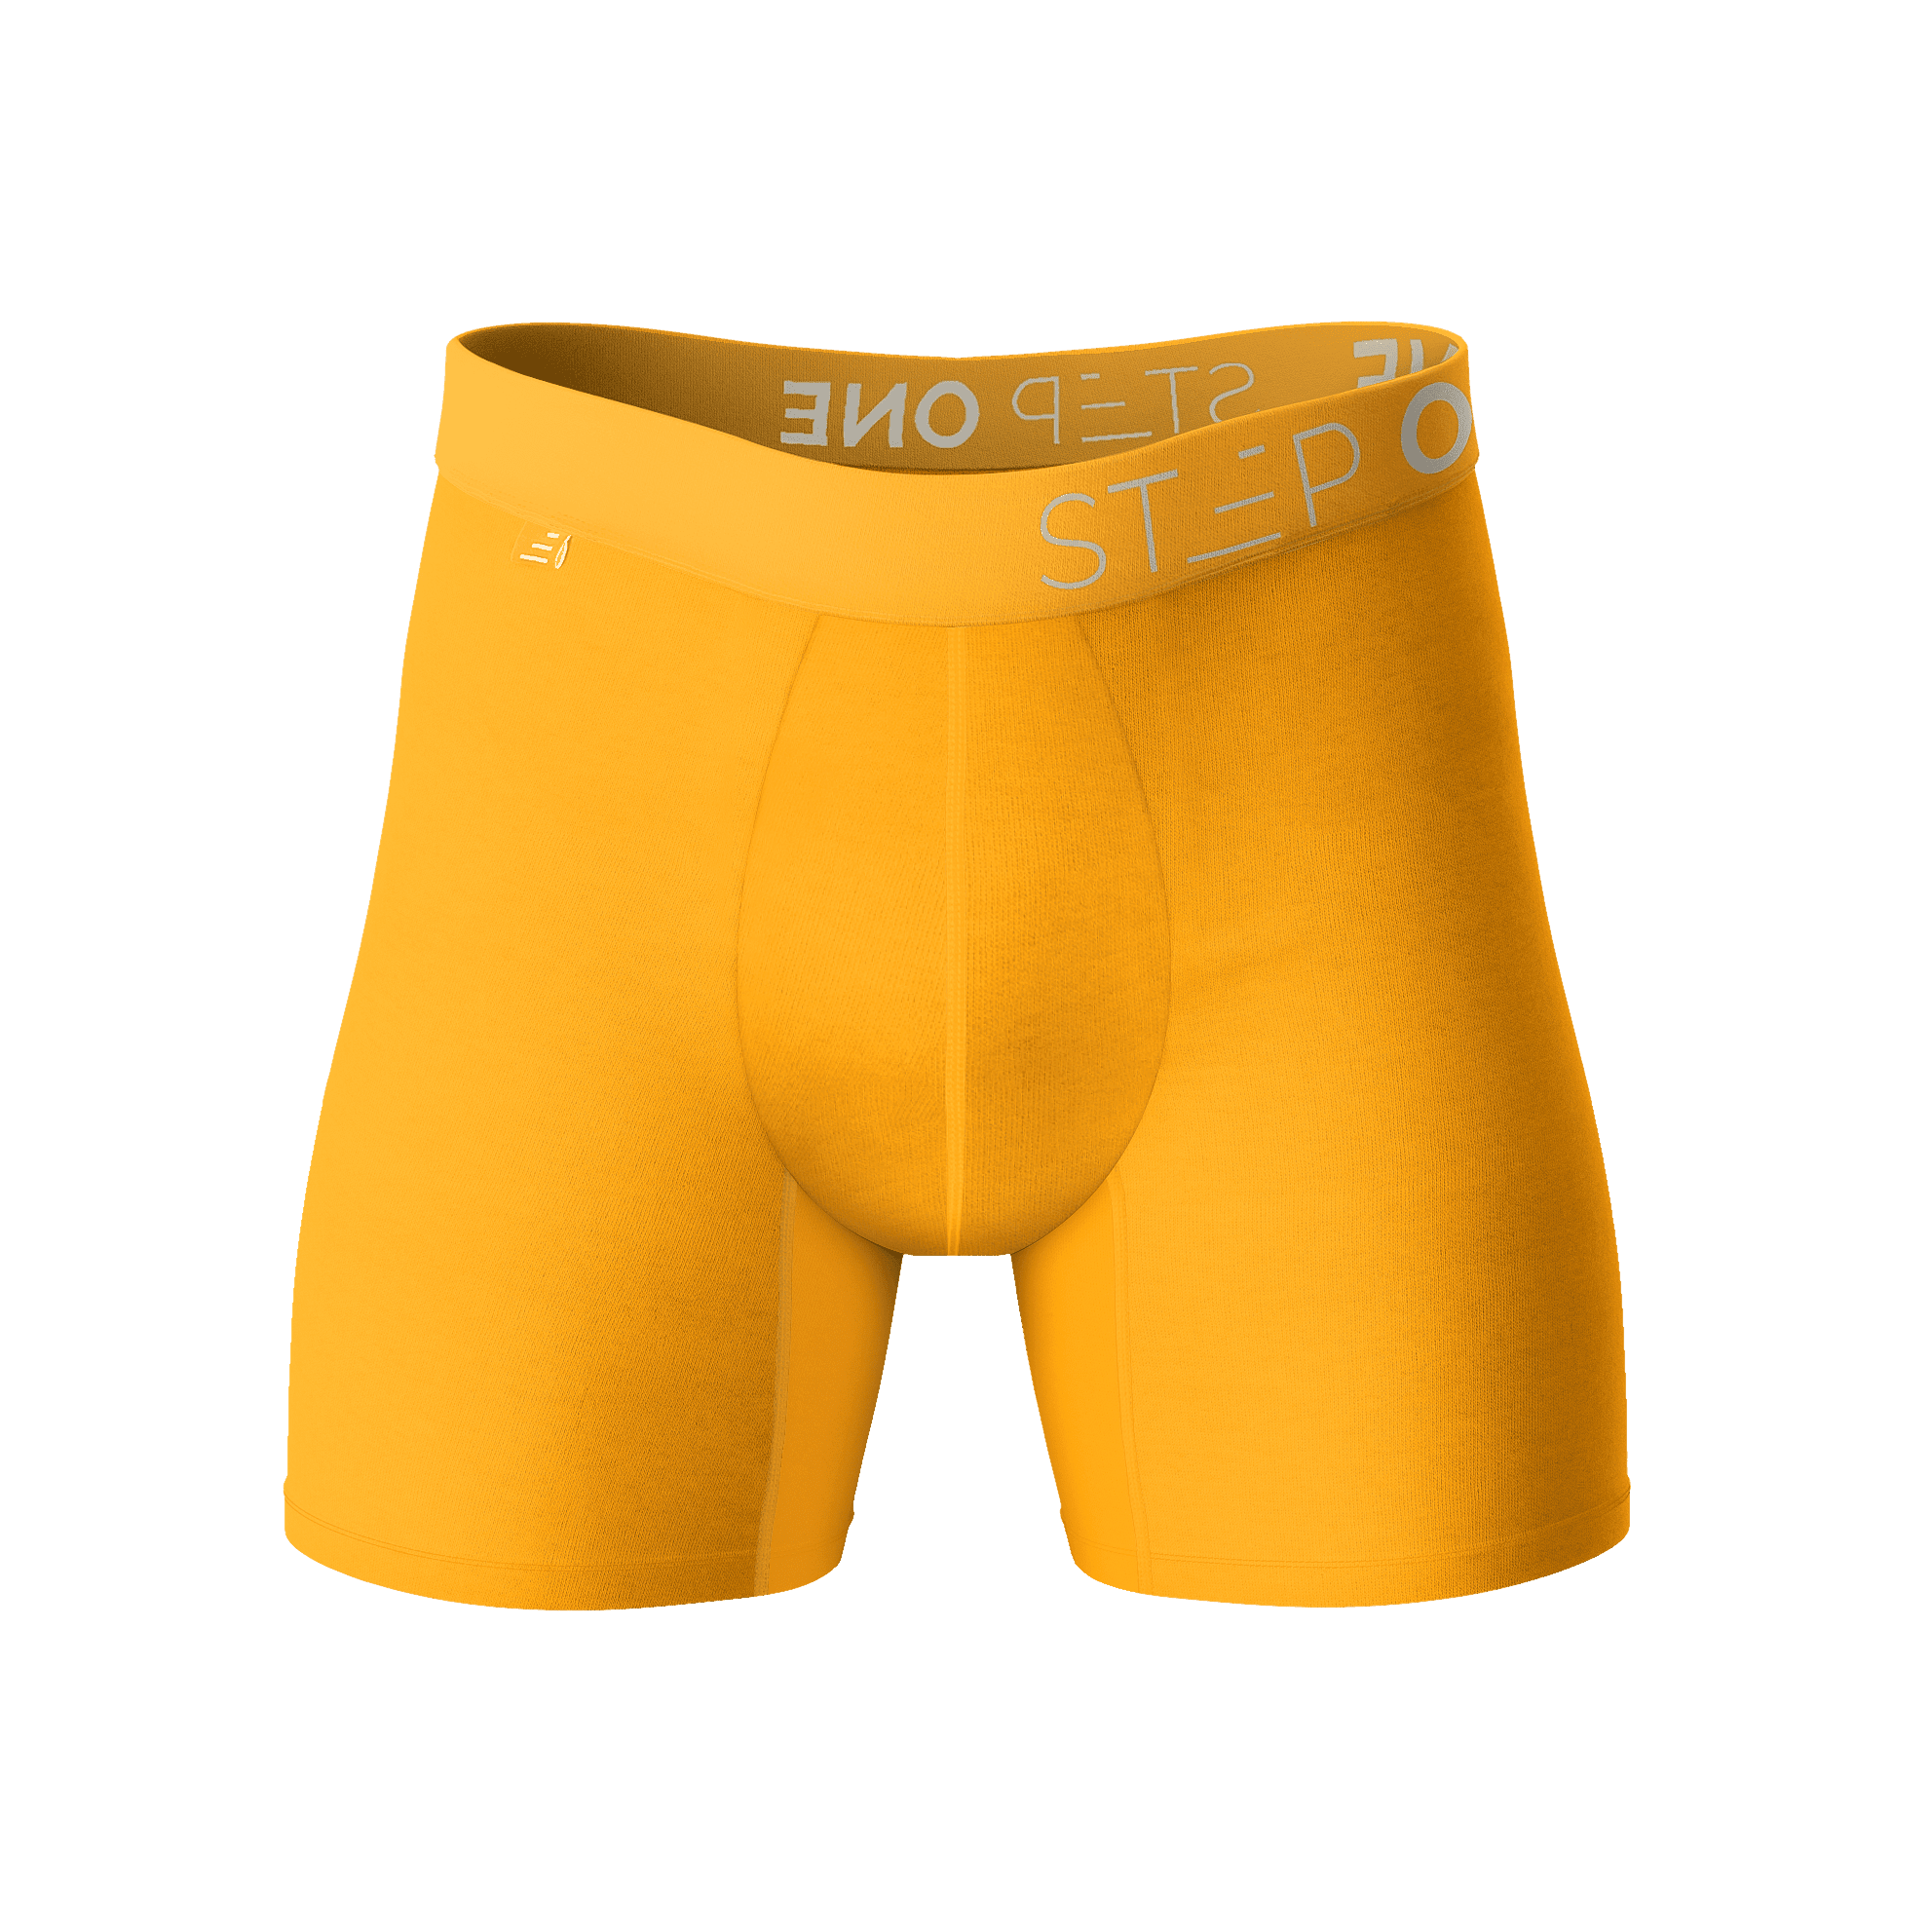 Boxer Brief - Egg Yolks | Step One Men's Underwear